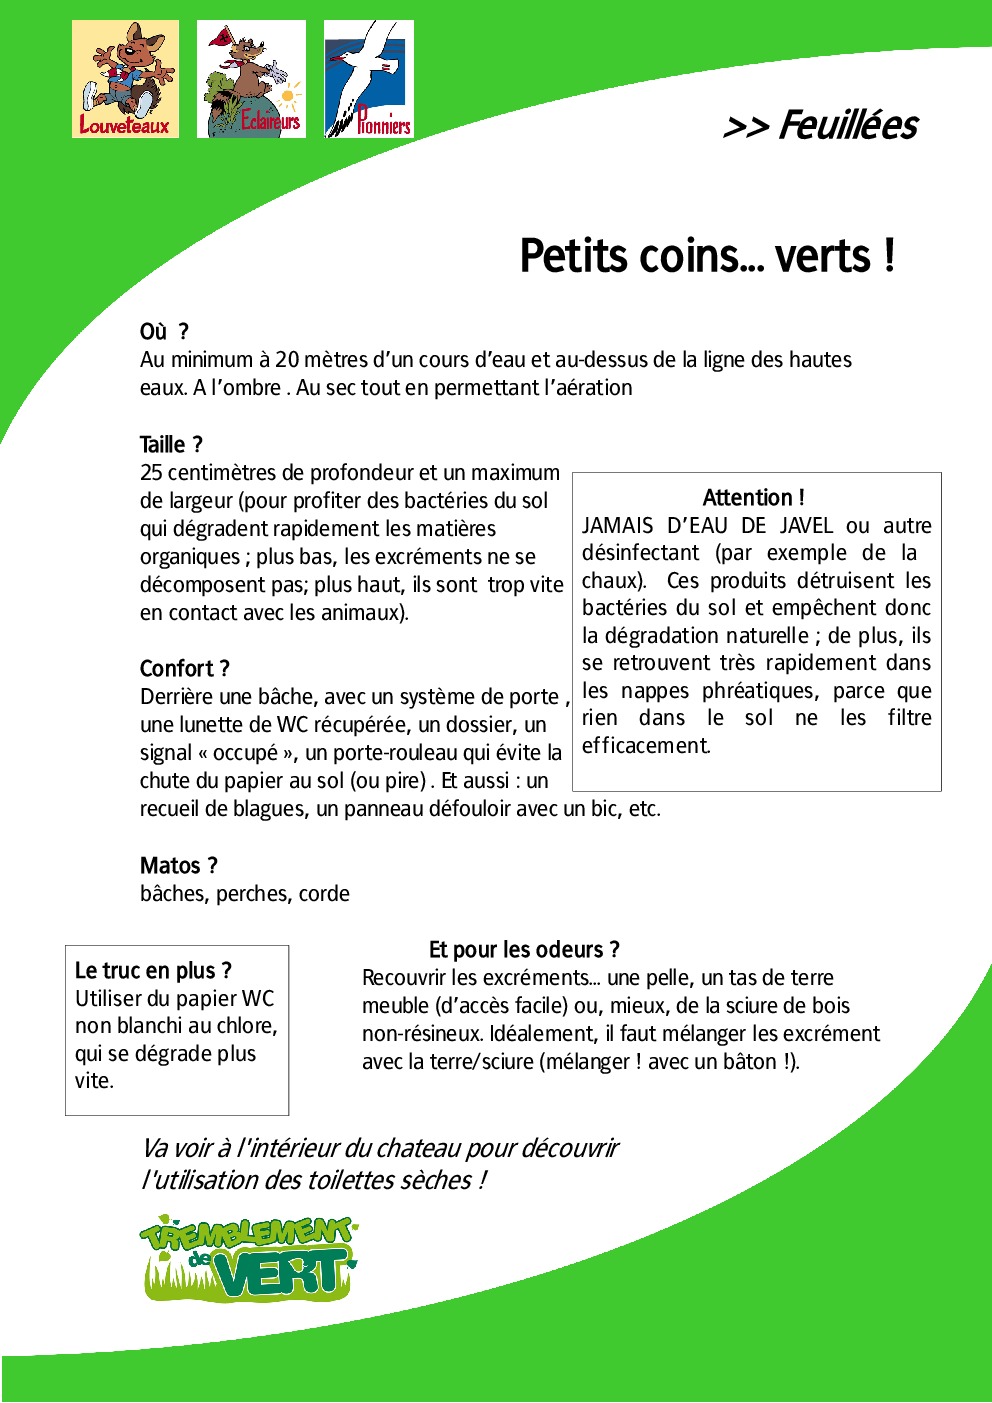 FT_TV_CV_04_Petits_coins_verts.pdf